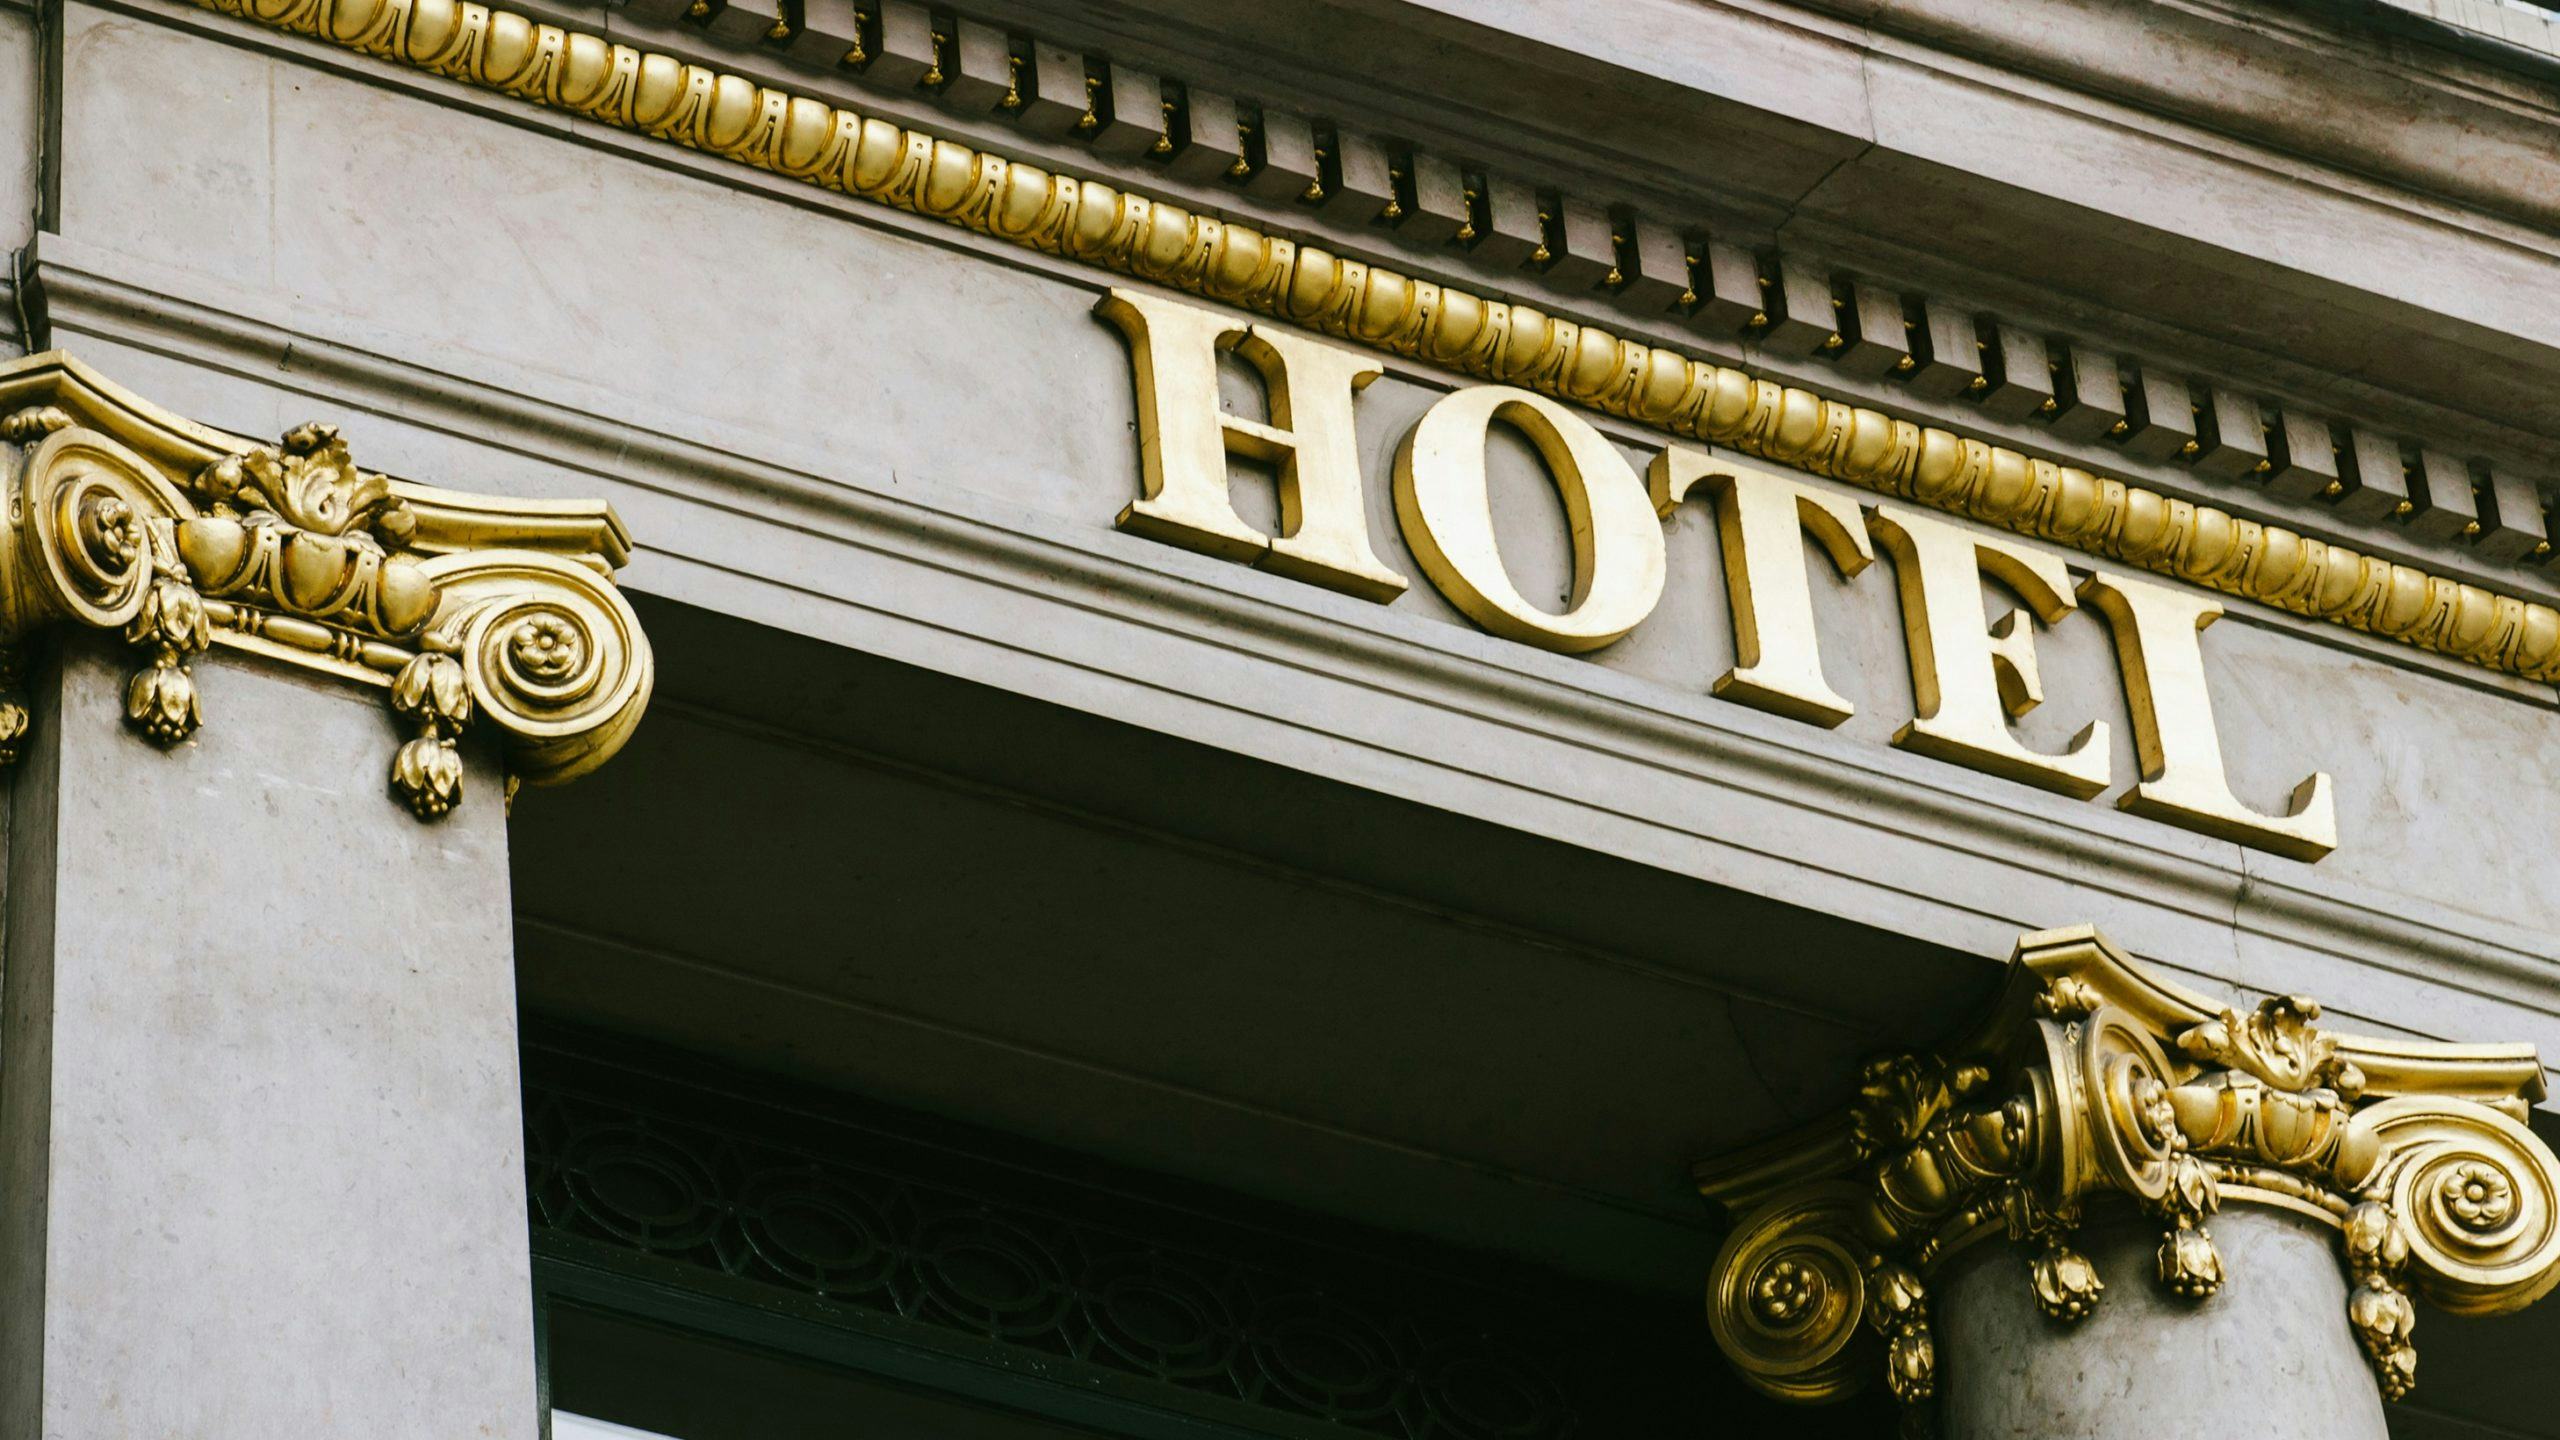 HOSTA 2021: 'Nog een lange weg voor herstel hotelmarkt'